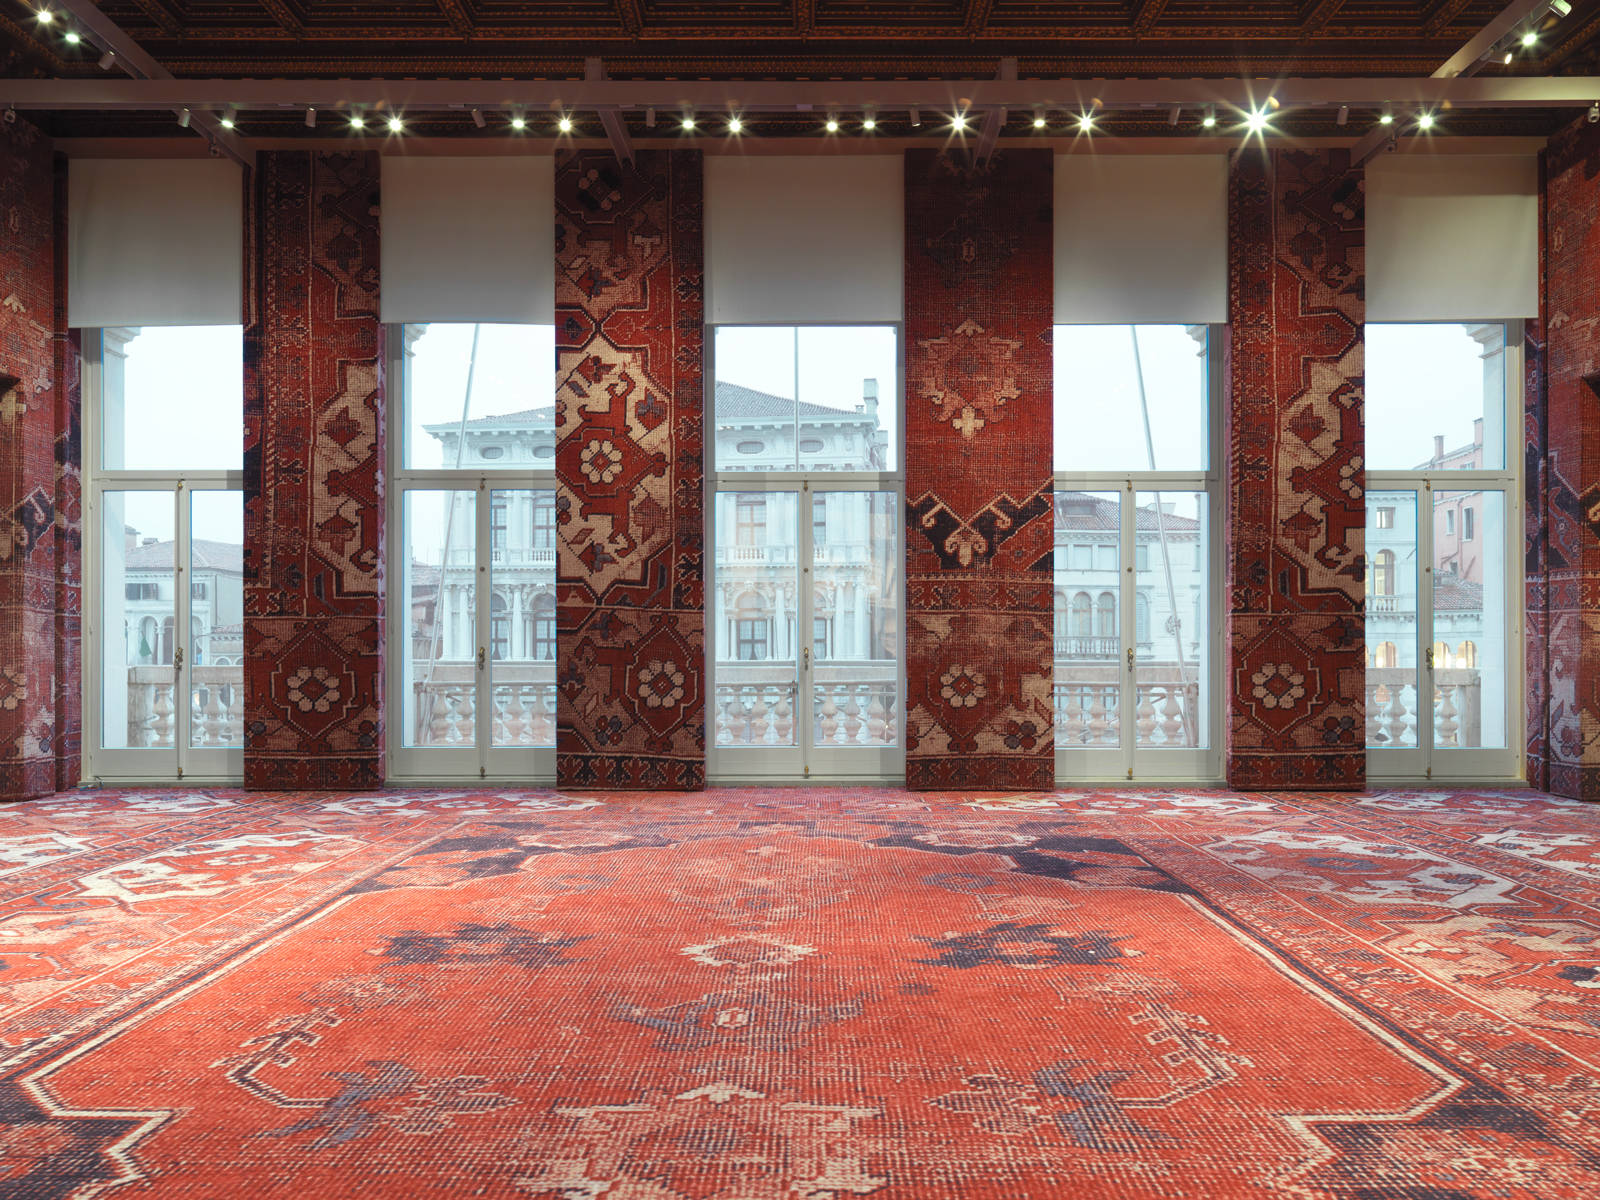 Rudolf Stingel / Exhibition view, Palazzo Grassi, Venice / 2013